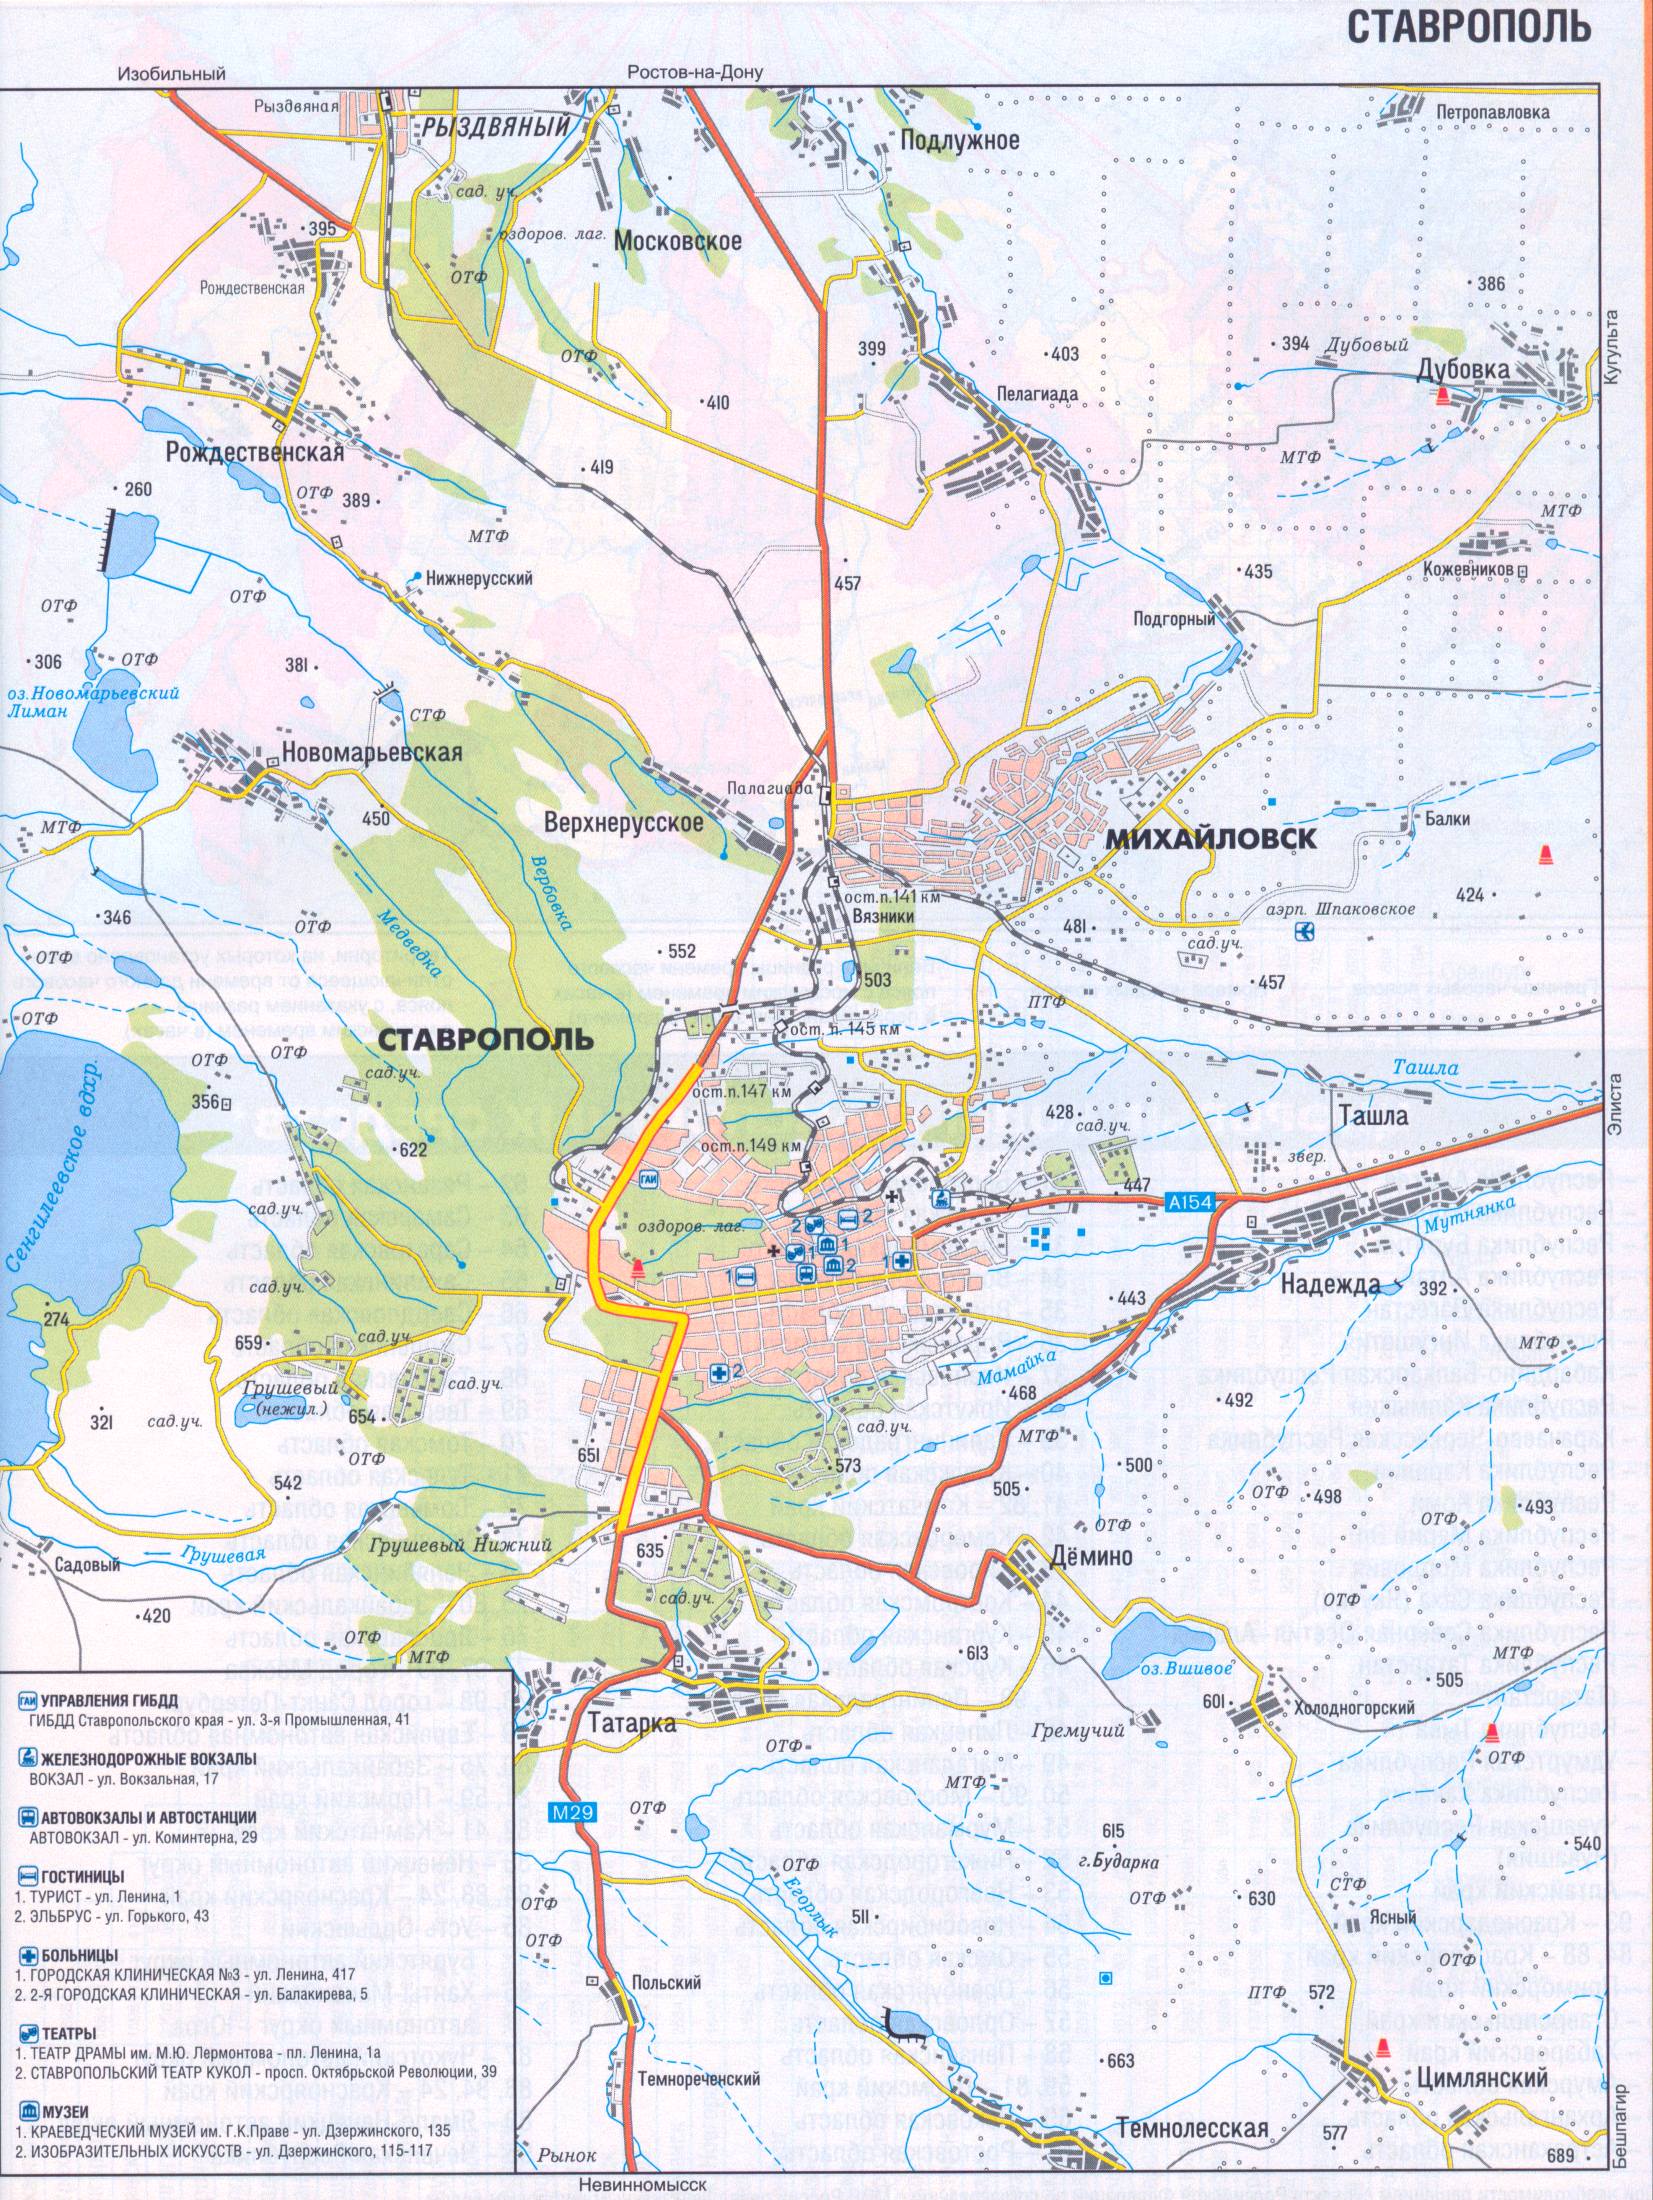 Карта Ставрополя. Автомобильные дороги города Ставрополь и окрестностей, телефоны и адреса гостиниц, A0 - 